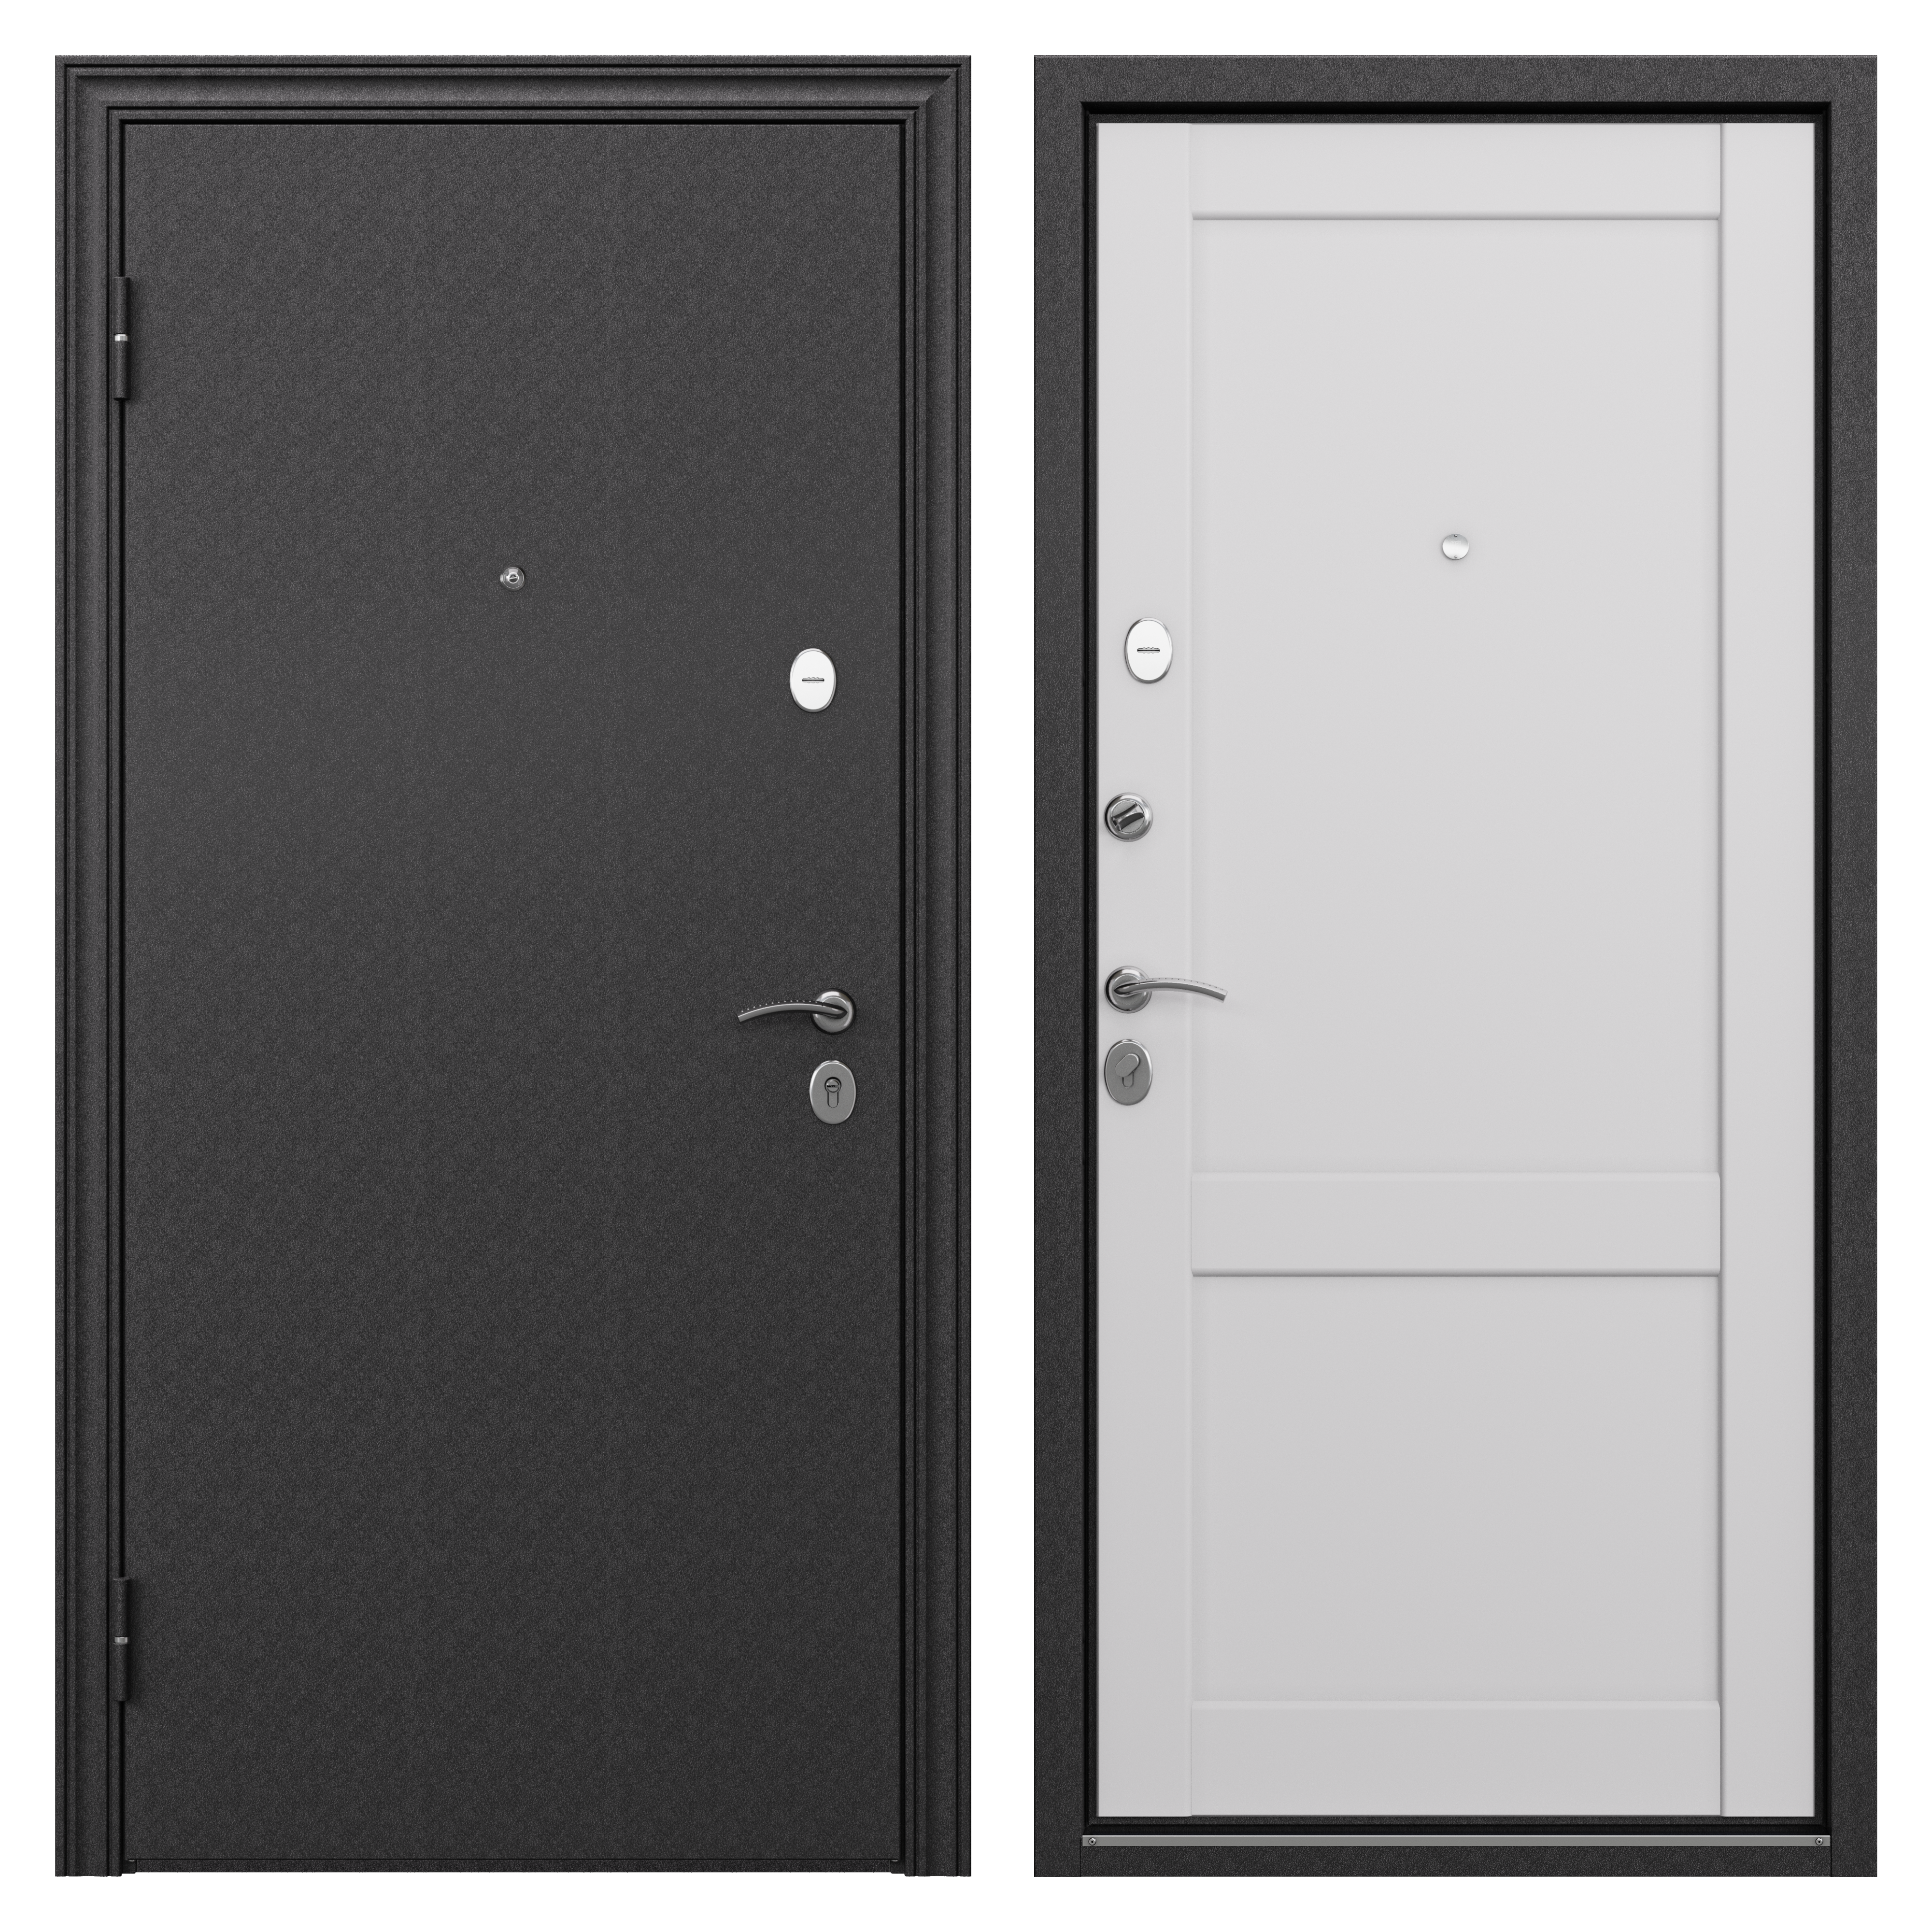 83404266 Дверь входная металлическая Ронда,860 мм, левая, цвет танганика STLM-0040913 TOREX